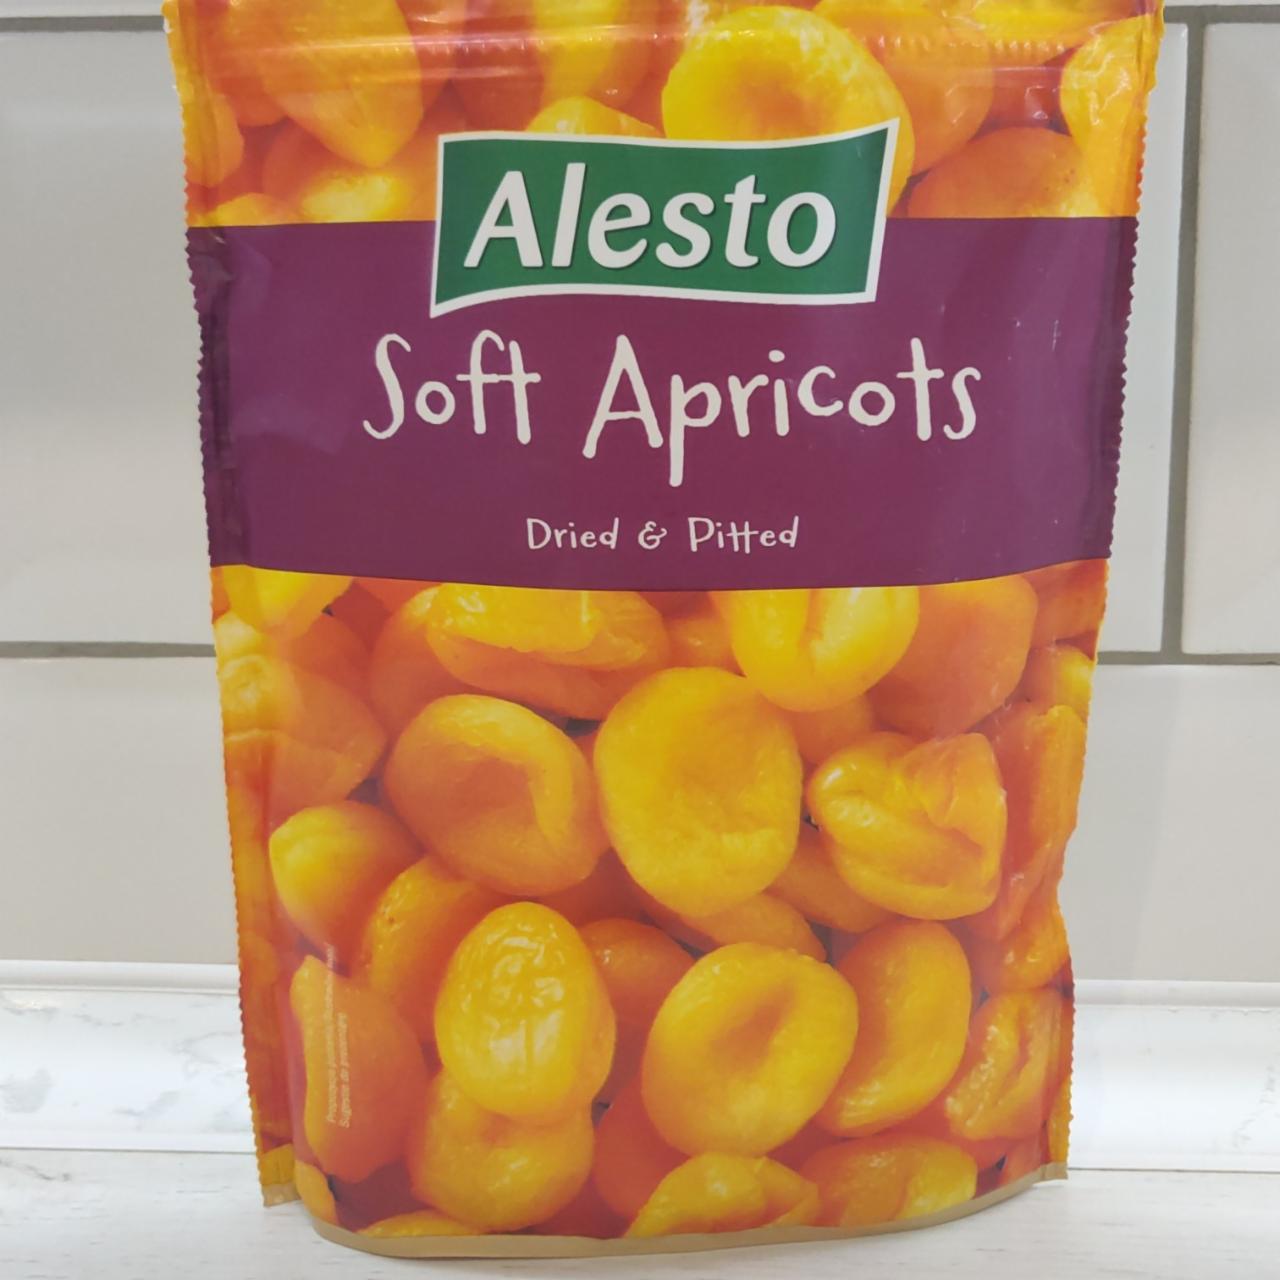 Фото - Абрикосы мягкие сушеные без косточек Курага Soft Apricots Alesto